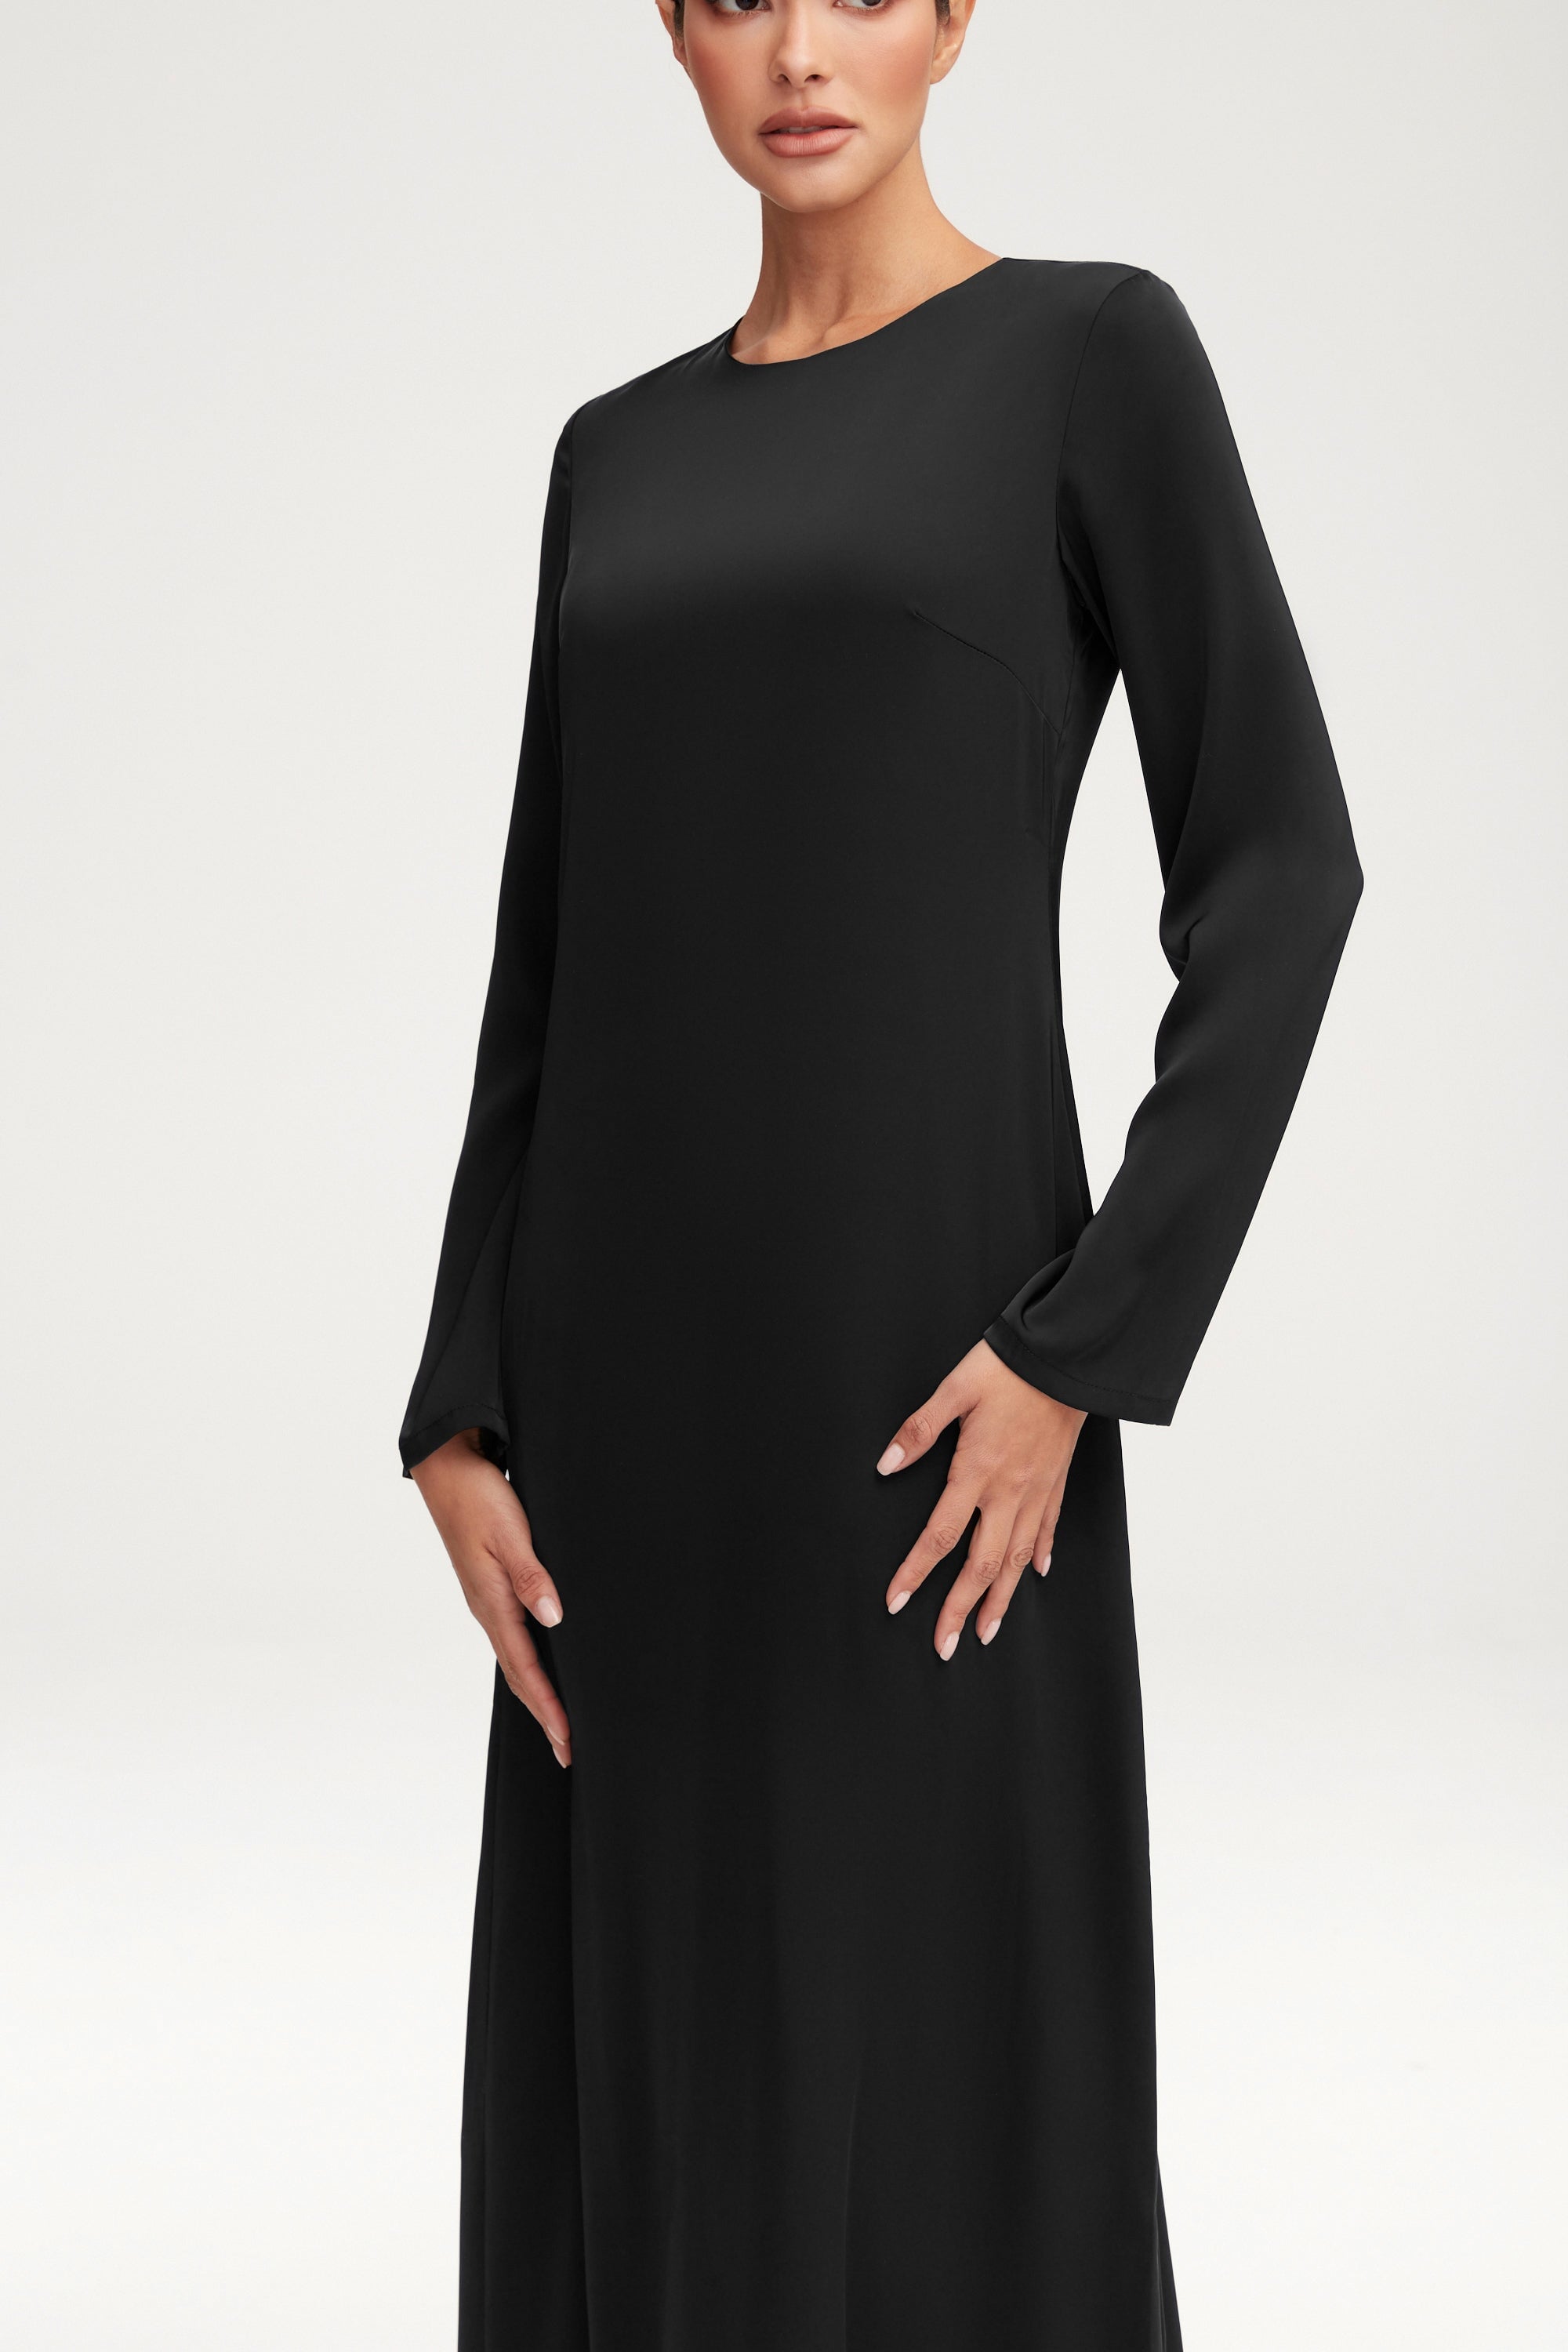 Essential Inner Slip Satin Maxi Dress - Black Clothing Veiled 